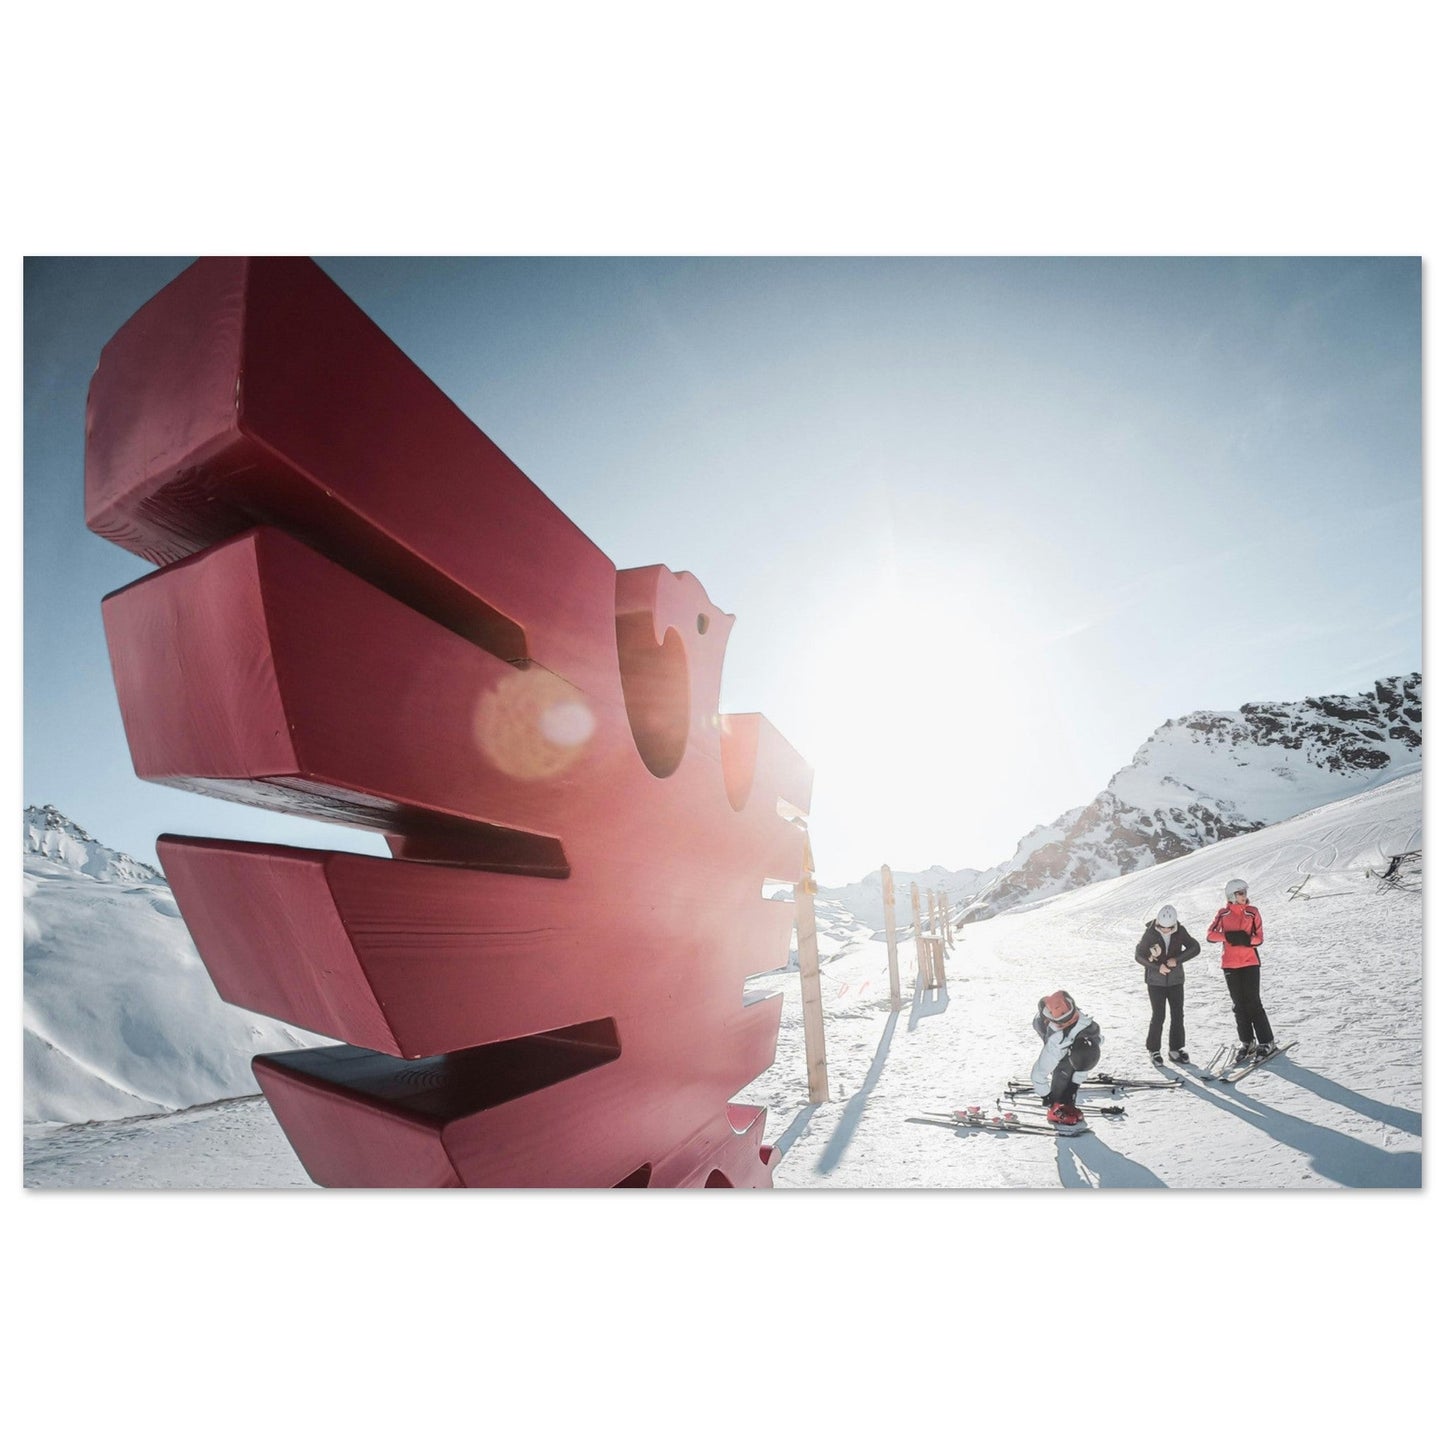 Vente Photo de Val d'Isère en hiver #1 - Tableau photo alu montagne